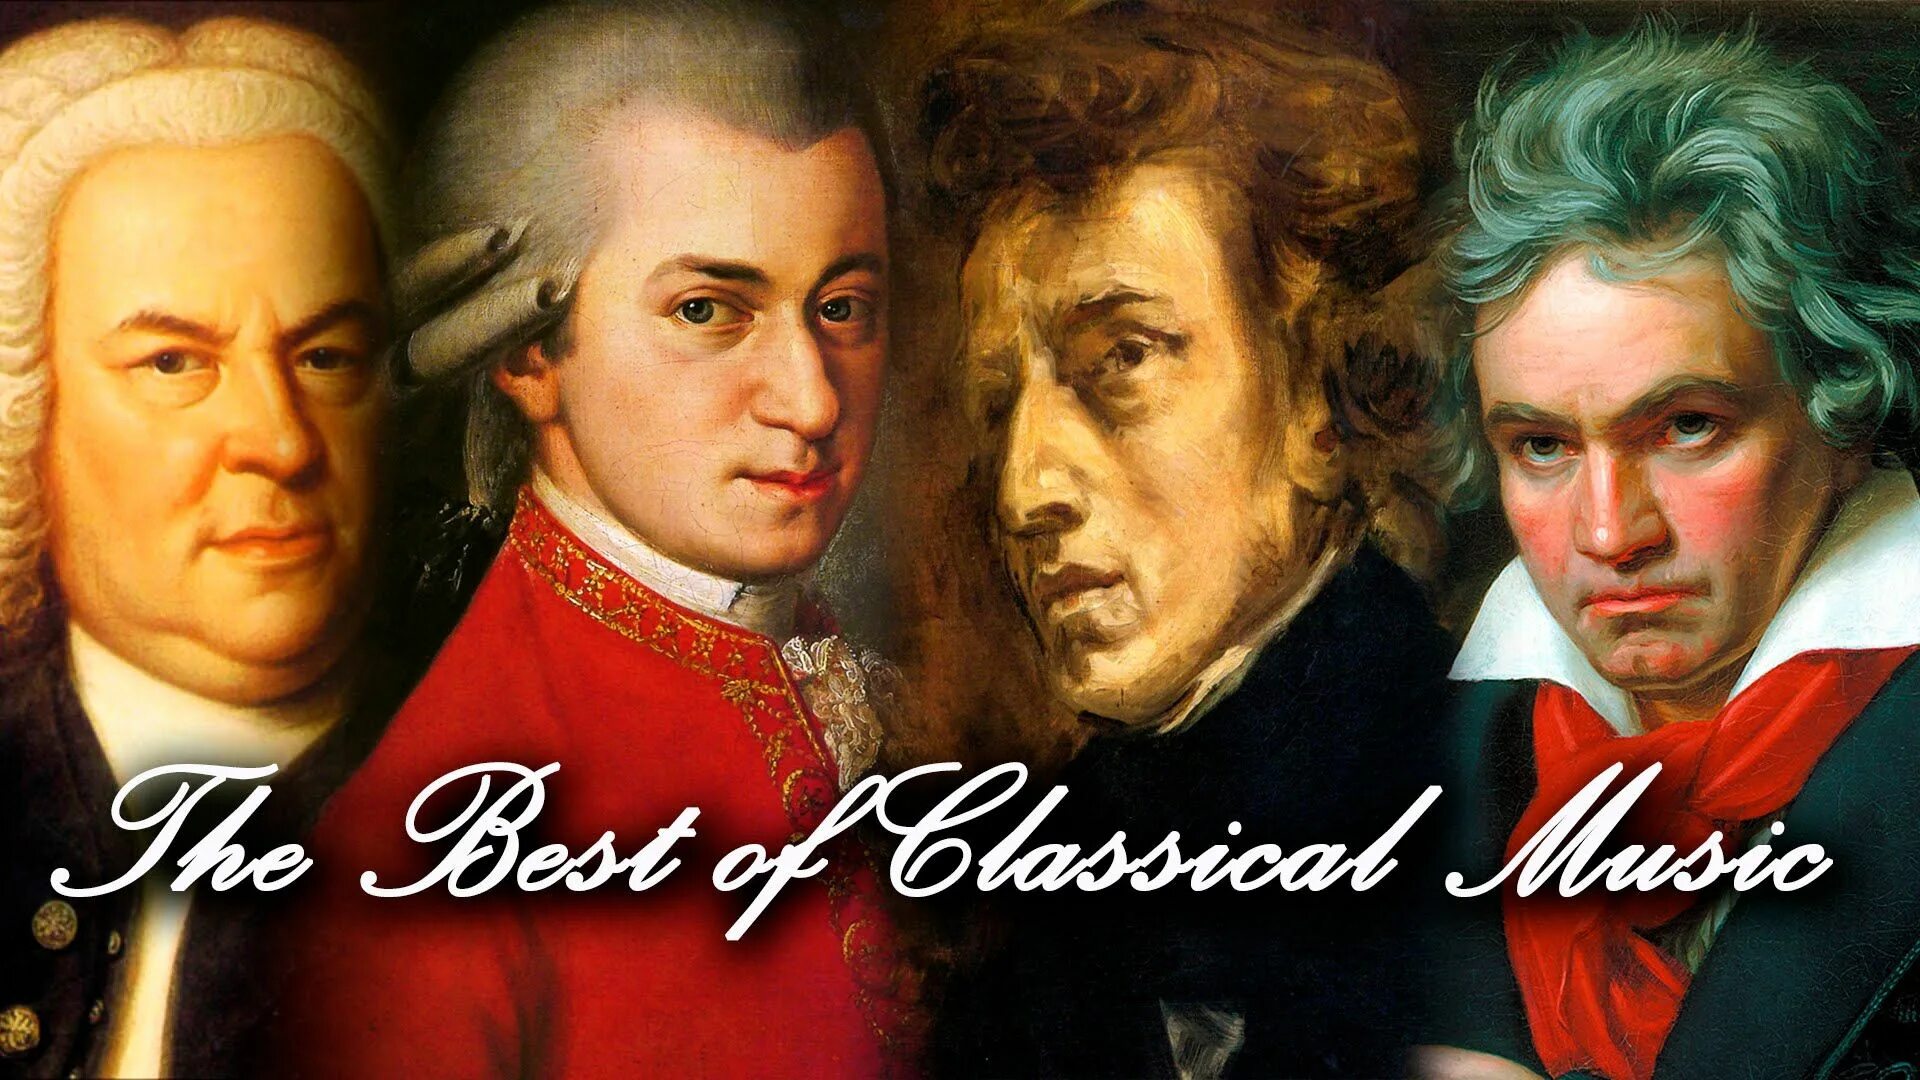 You like classical music. Моцарт композитор. Бах Моцарт Бетховен Чайковский. Бетховен Вивальди Моцарт. Классика Бетховен Моцарт.